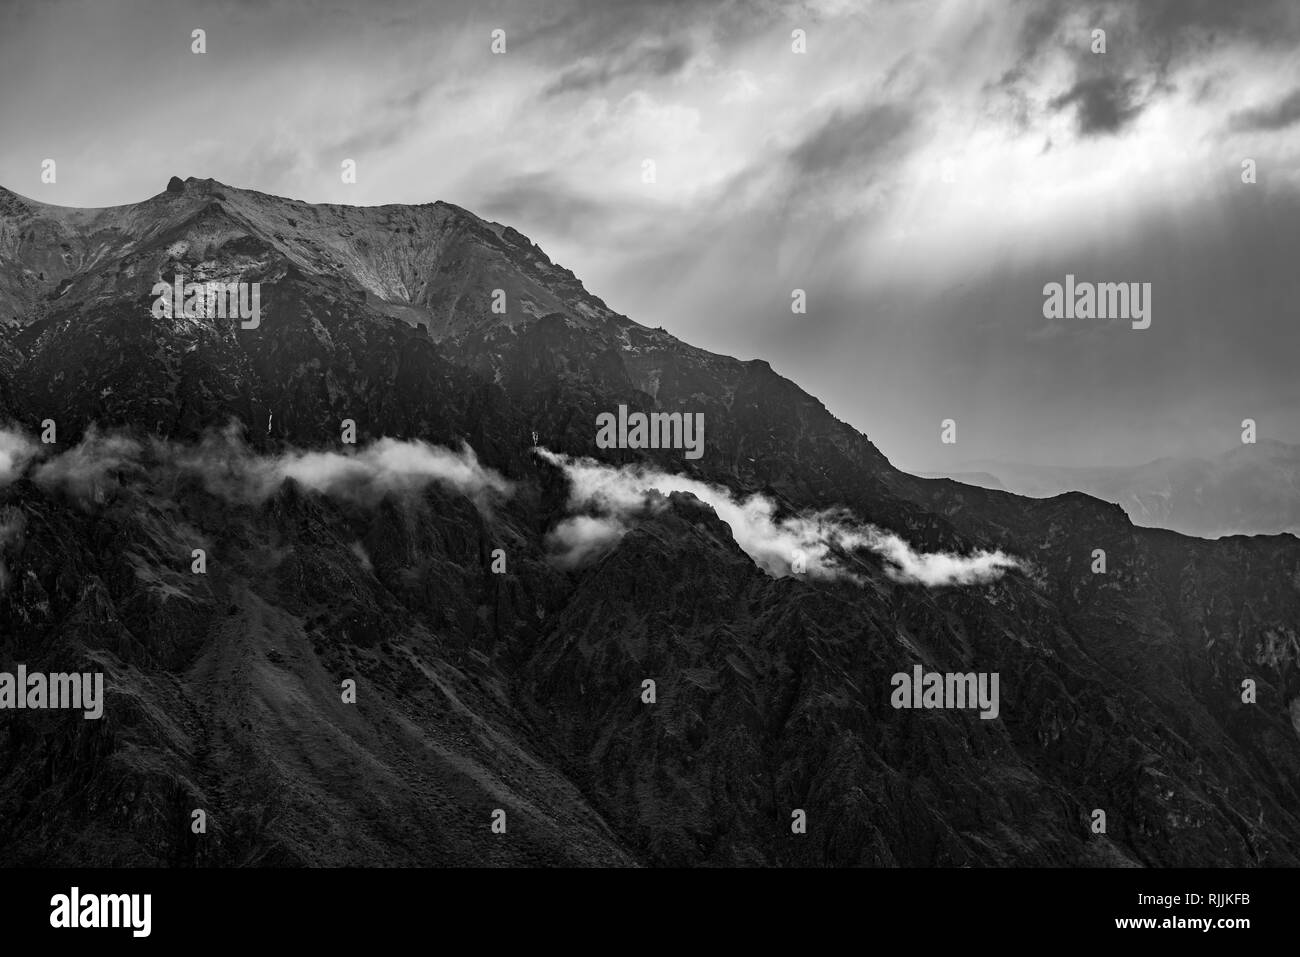 La cordigliera delle Ande in bianco e nero come il sole illumina le cime e le nuvole vicino al Canyon del Colca, Arequipa, Perù. Foto Stock